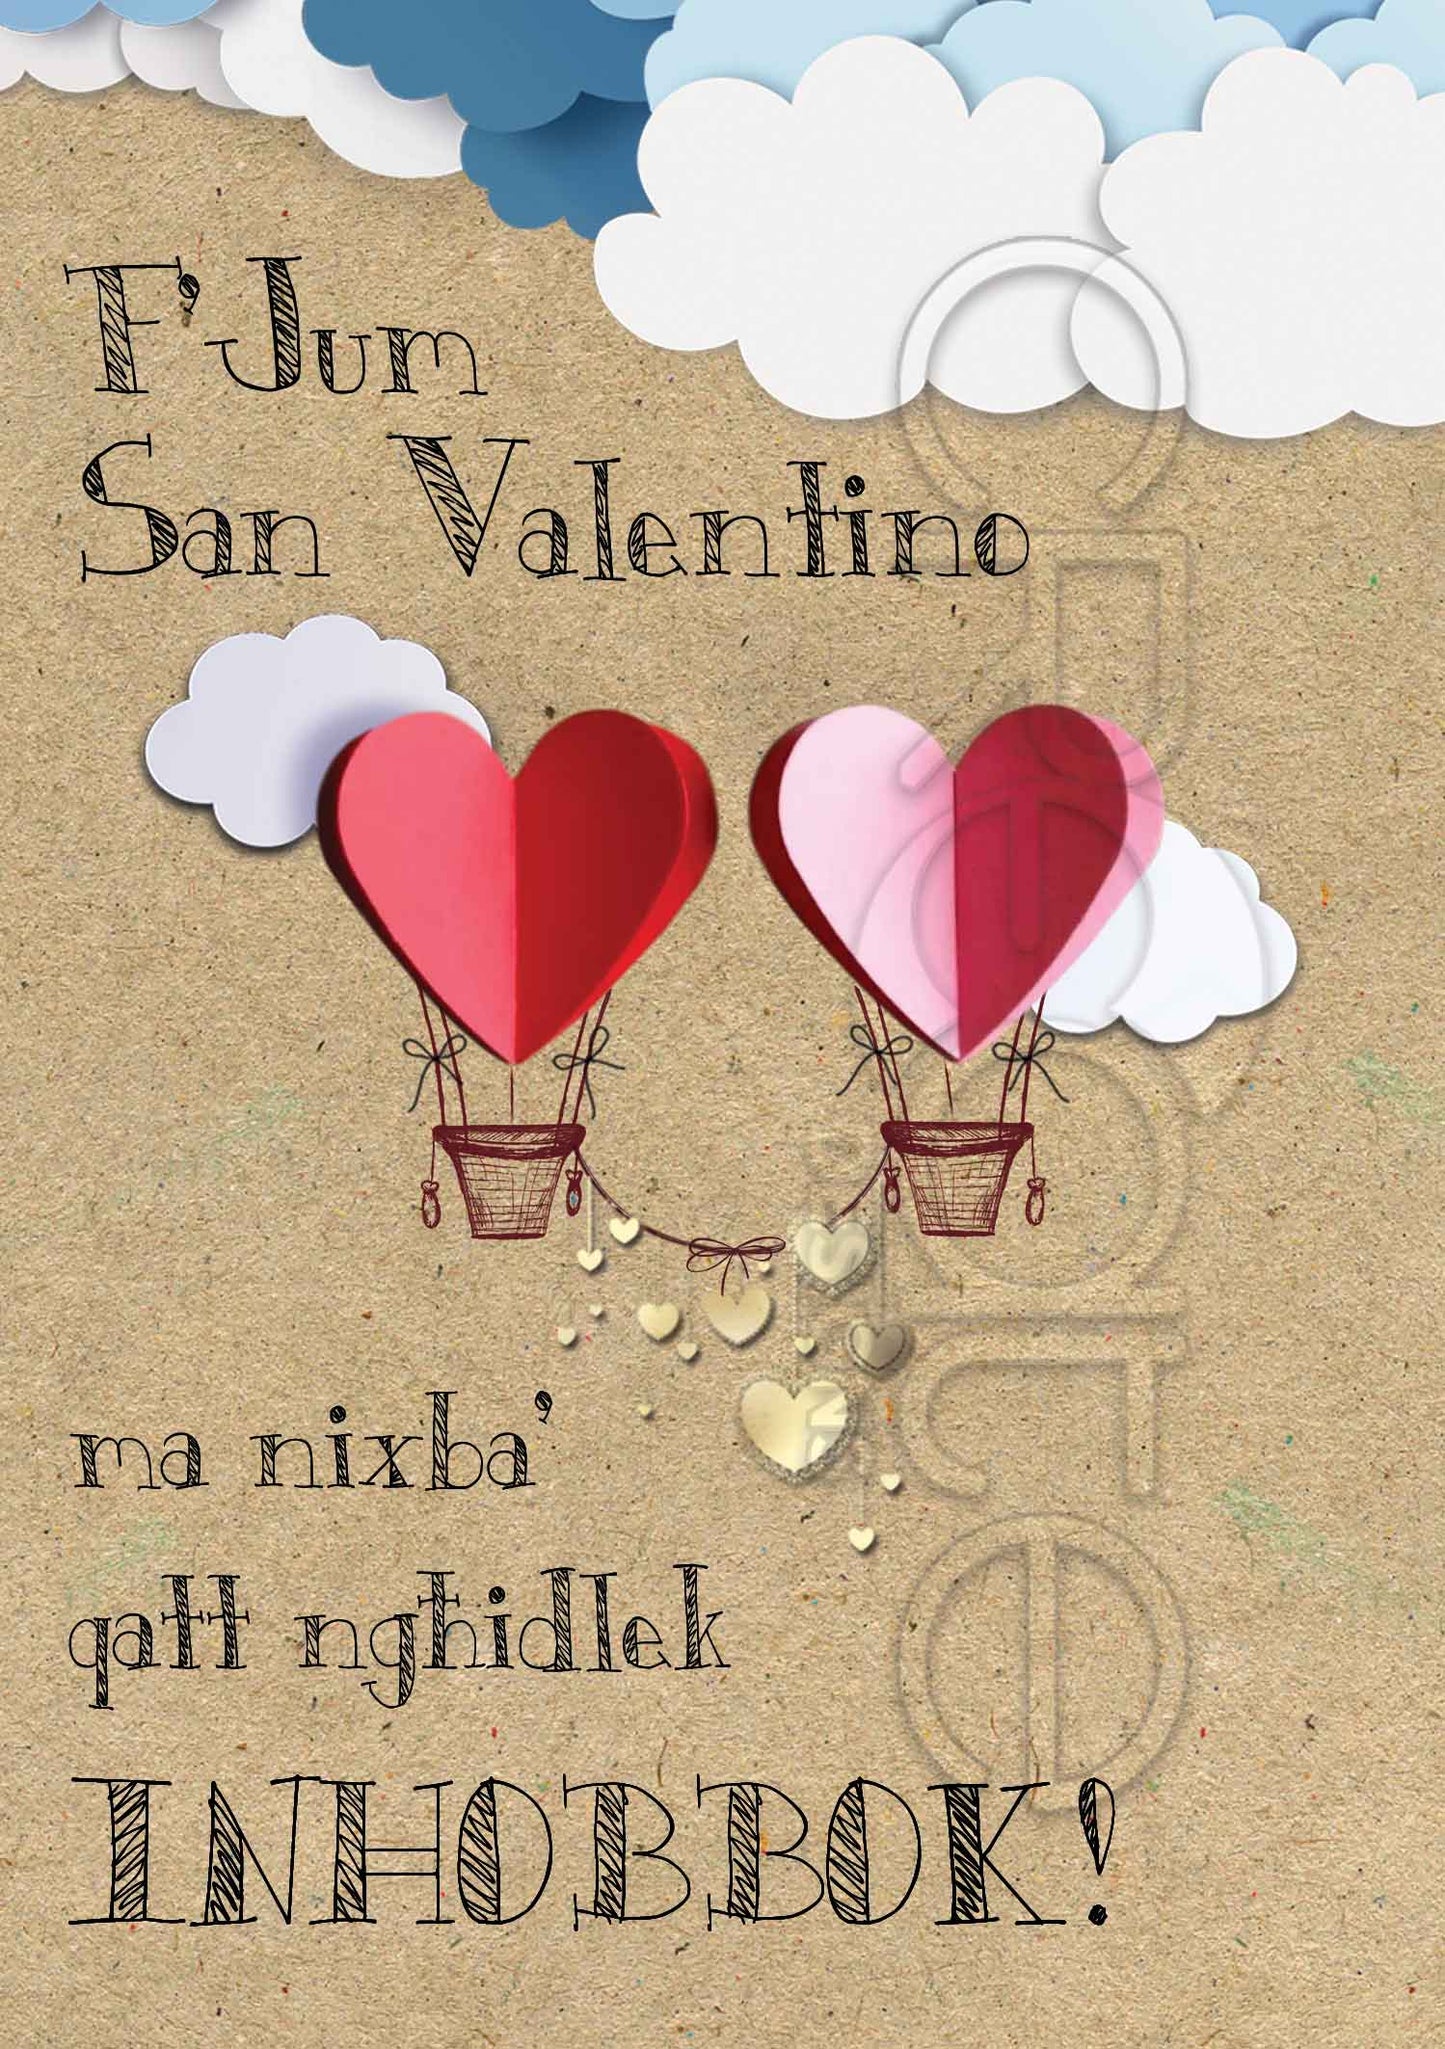 Kartolina għal San Valentino fuq sfond tal-kartun bil-qlub jittajjru